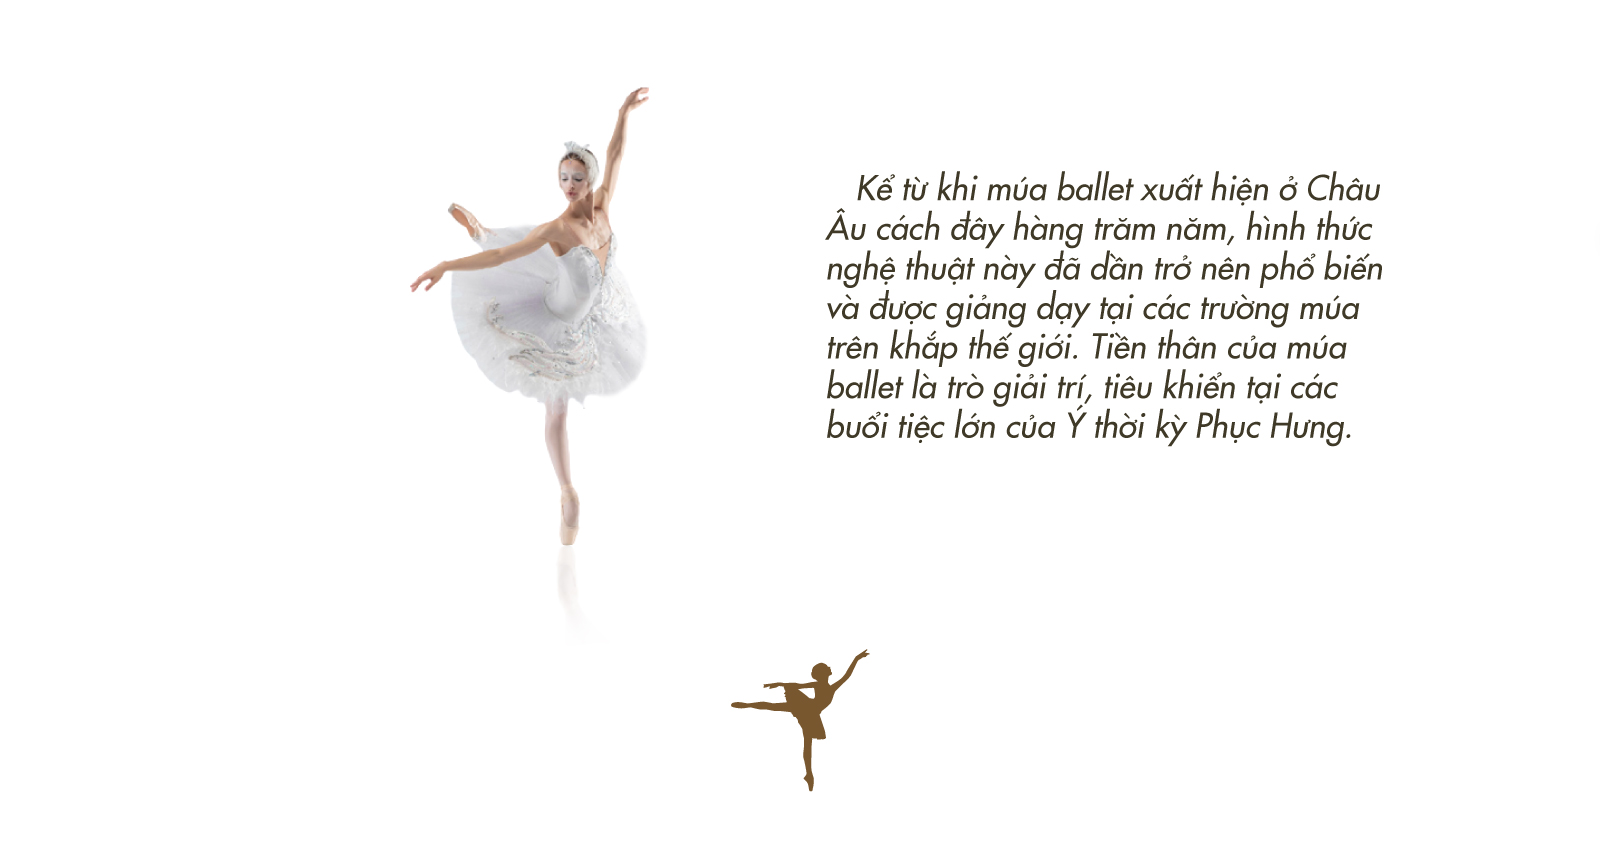 Hút hồn bộ ảnh múa ballet của nữ sinh trường Sư phạm | Báo Dân trí